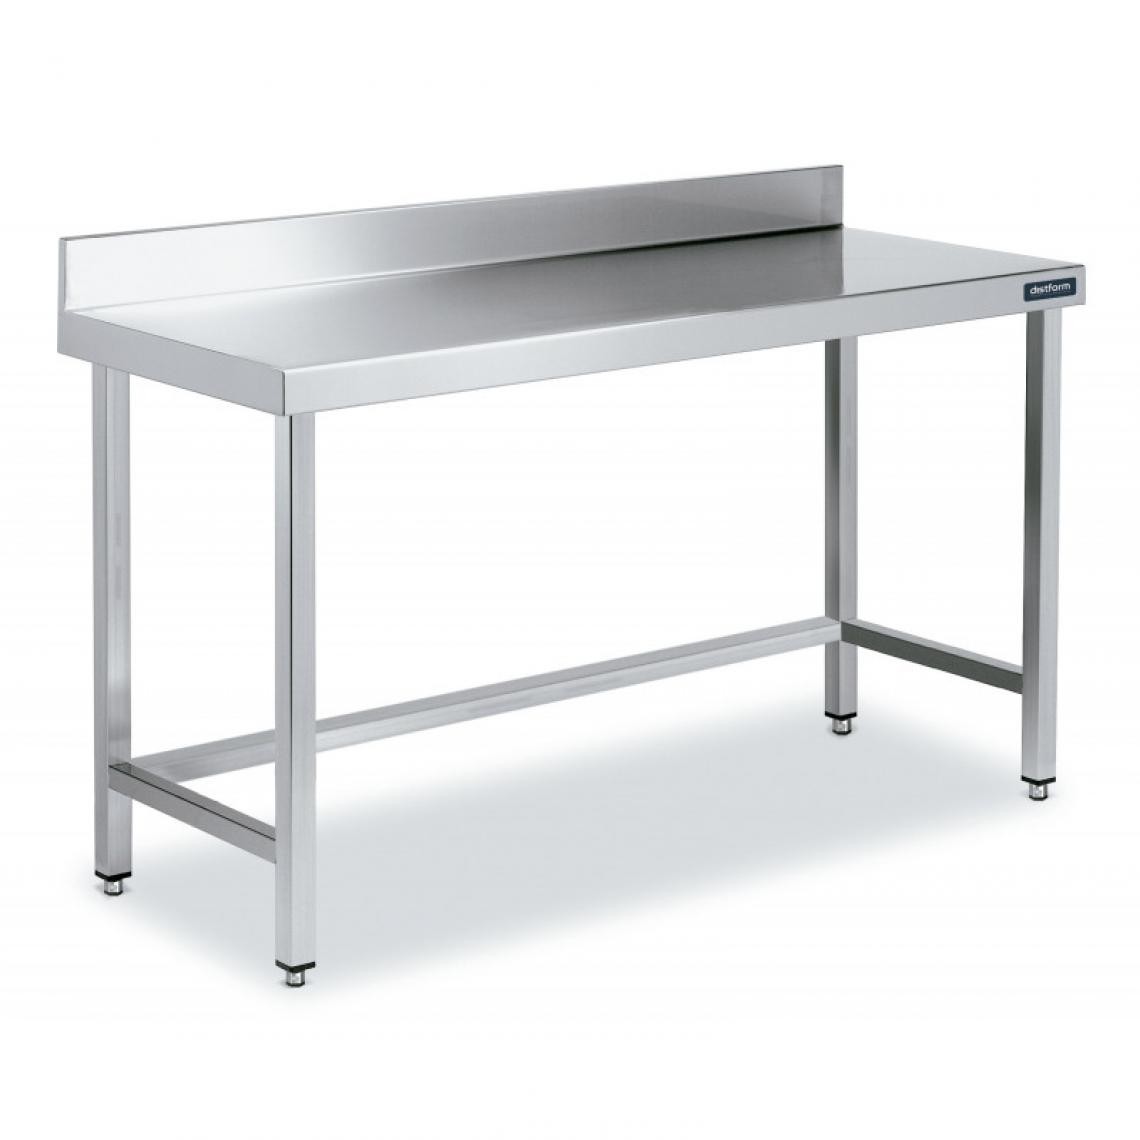 DISTFORM - Table Adossée en Inox avec Renforts Profondeur 550 mm - Distform - Acier inoxydable1500x550 - Tables à manger